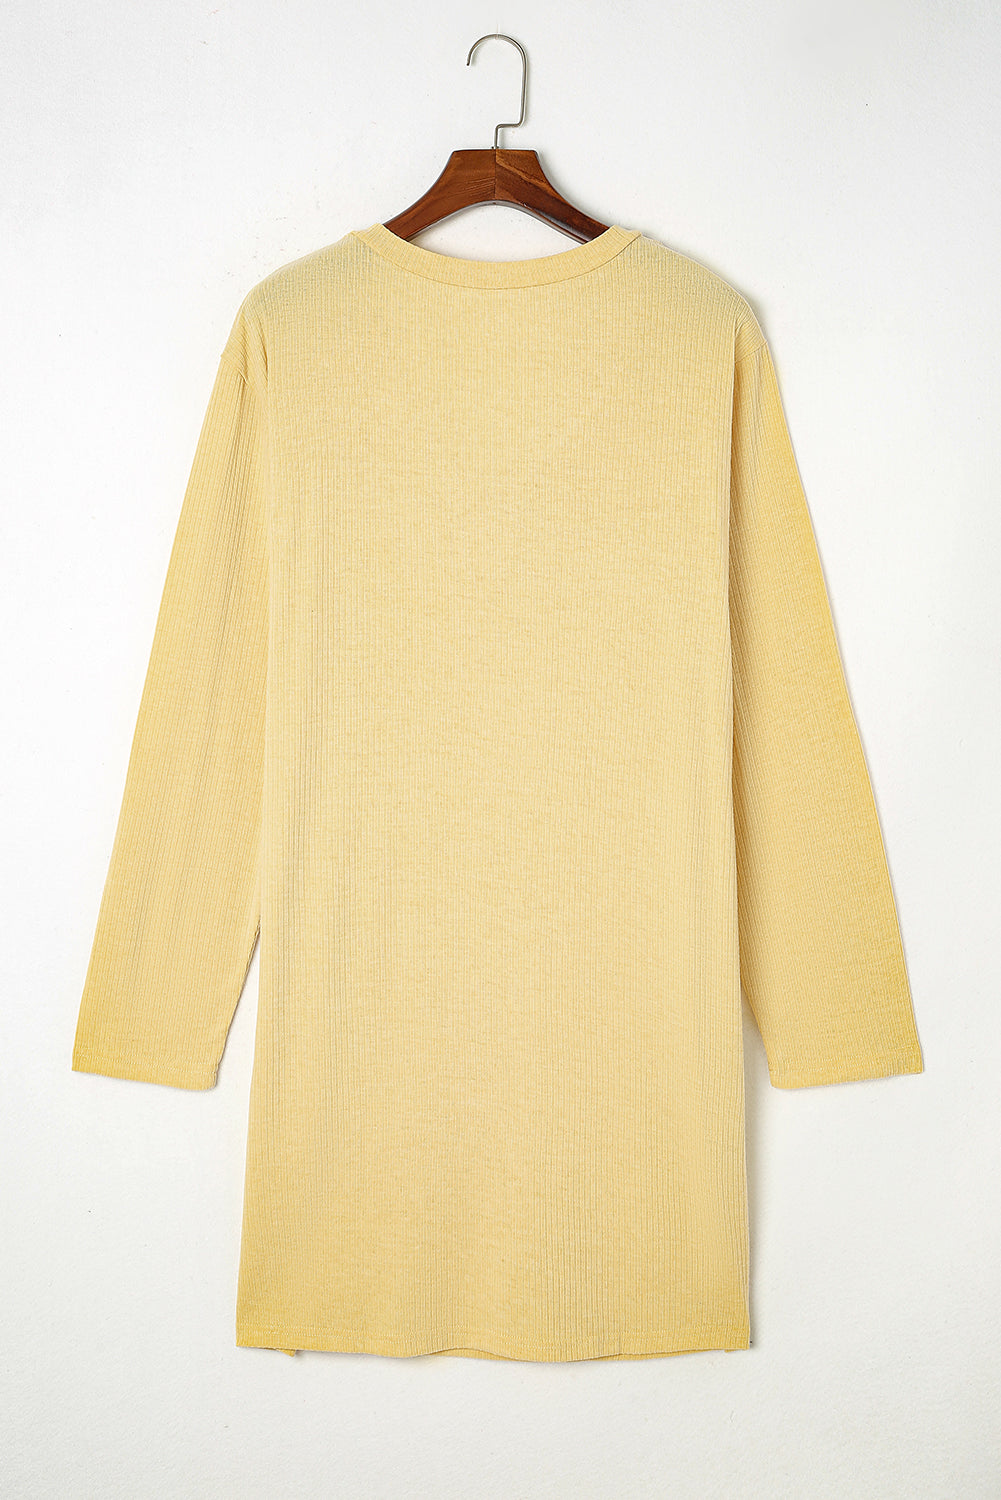 Gelbes, geripptes Henley-Kleid mit langen Ärmeln und Taschen in Übergröße